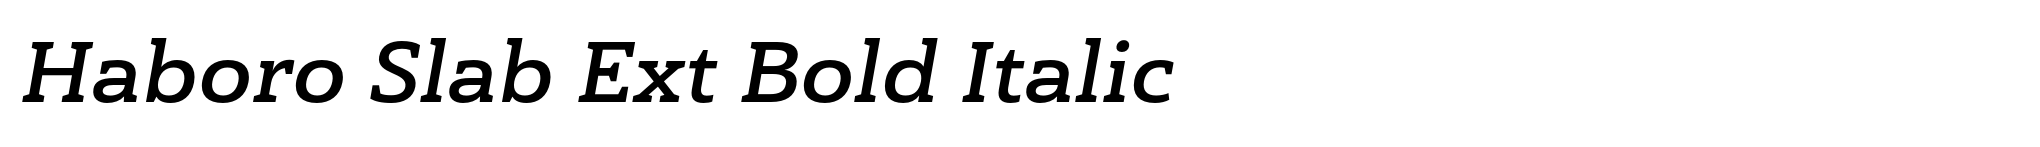 Haboro Slab Ext Bold Italic image